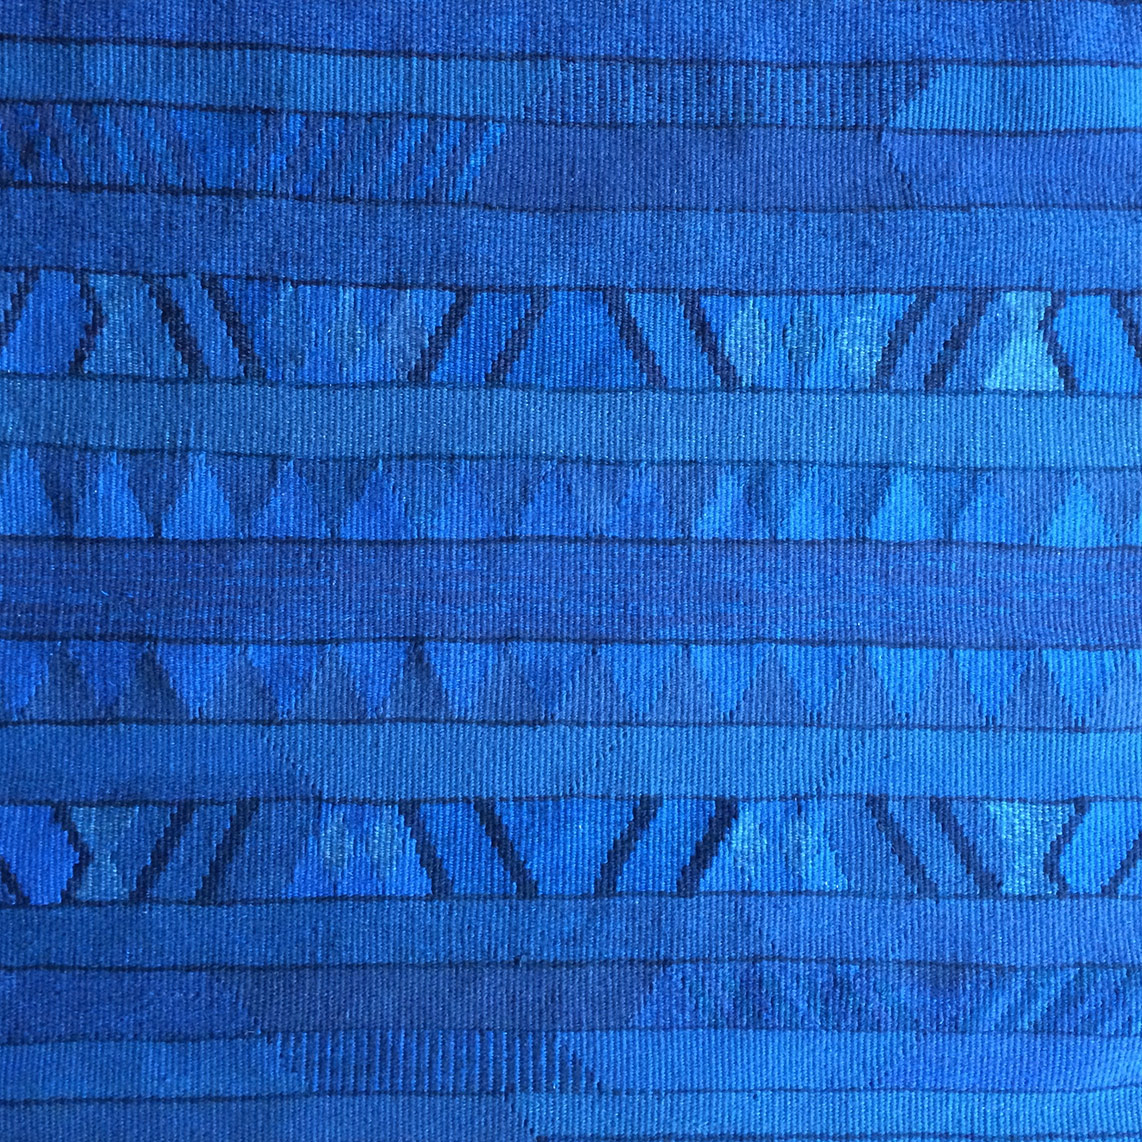 Tapisserie - 'Das blaue Wunder': Wolle, 92 x 100 cm, Baumwollkette 2 F/cm